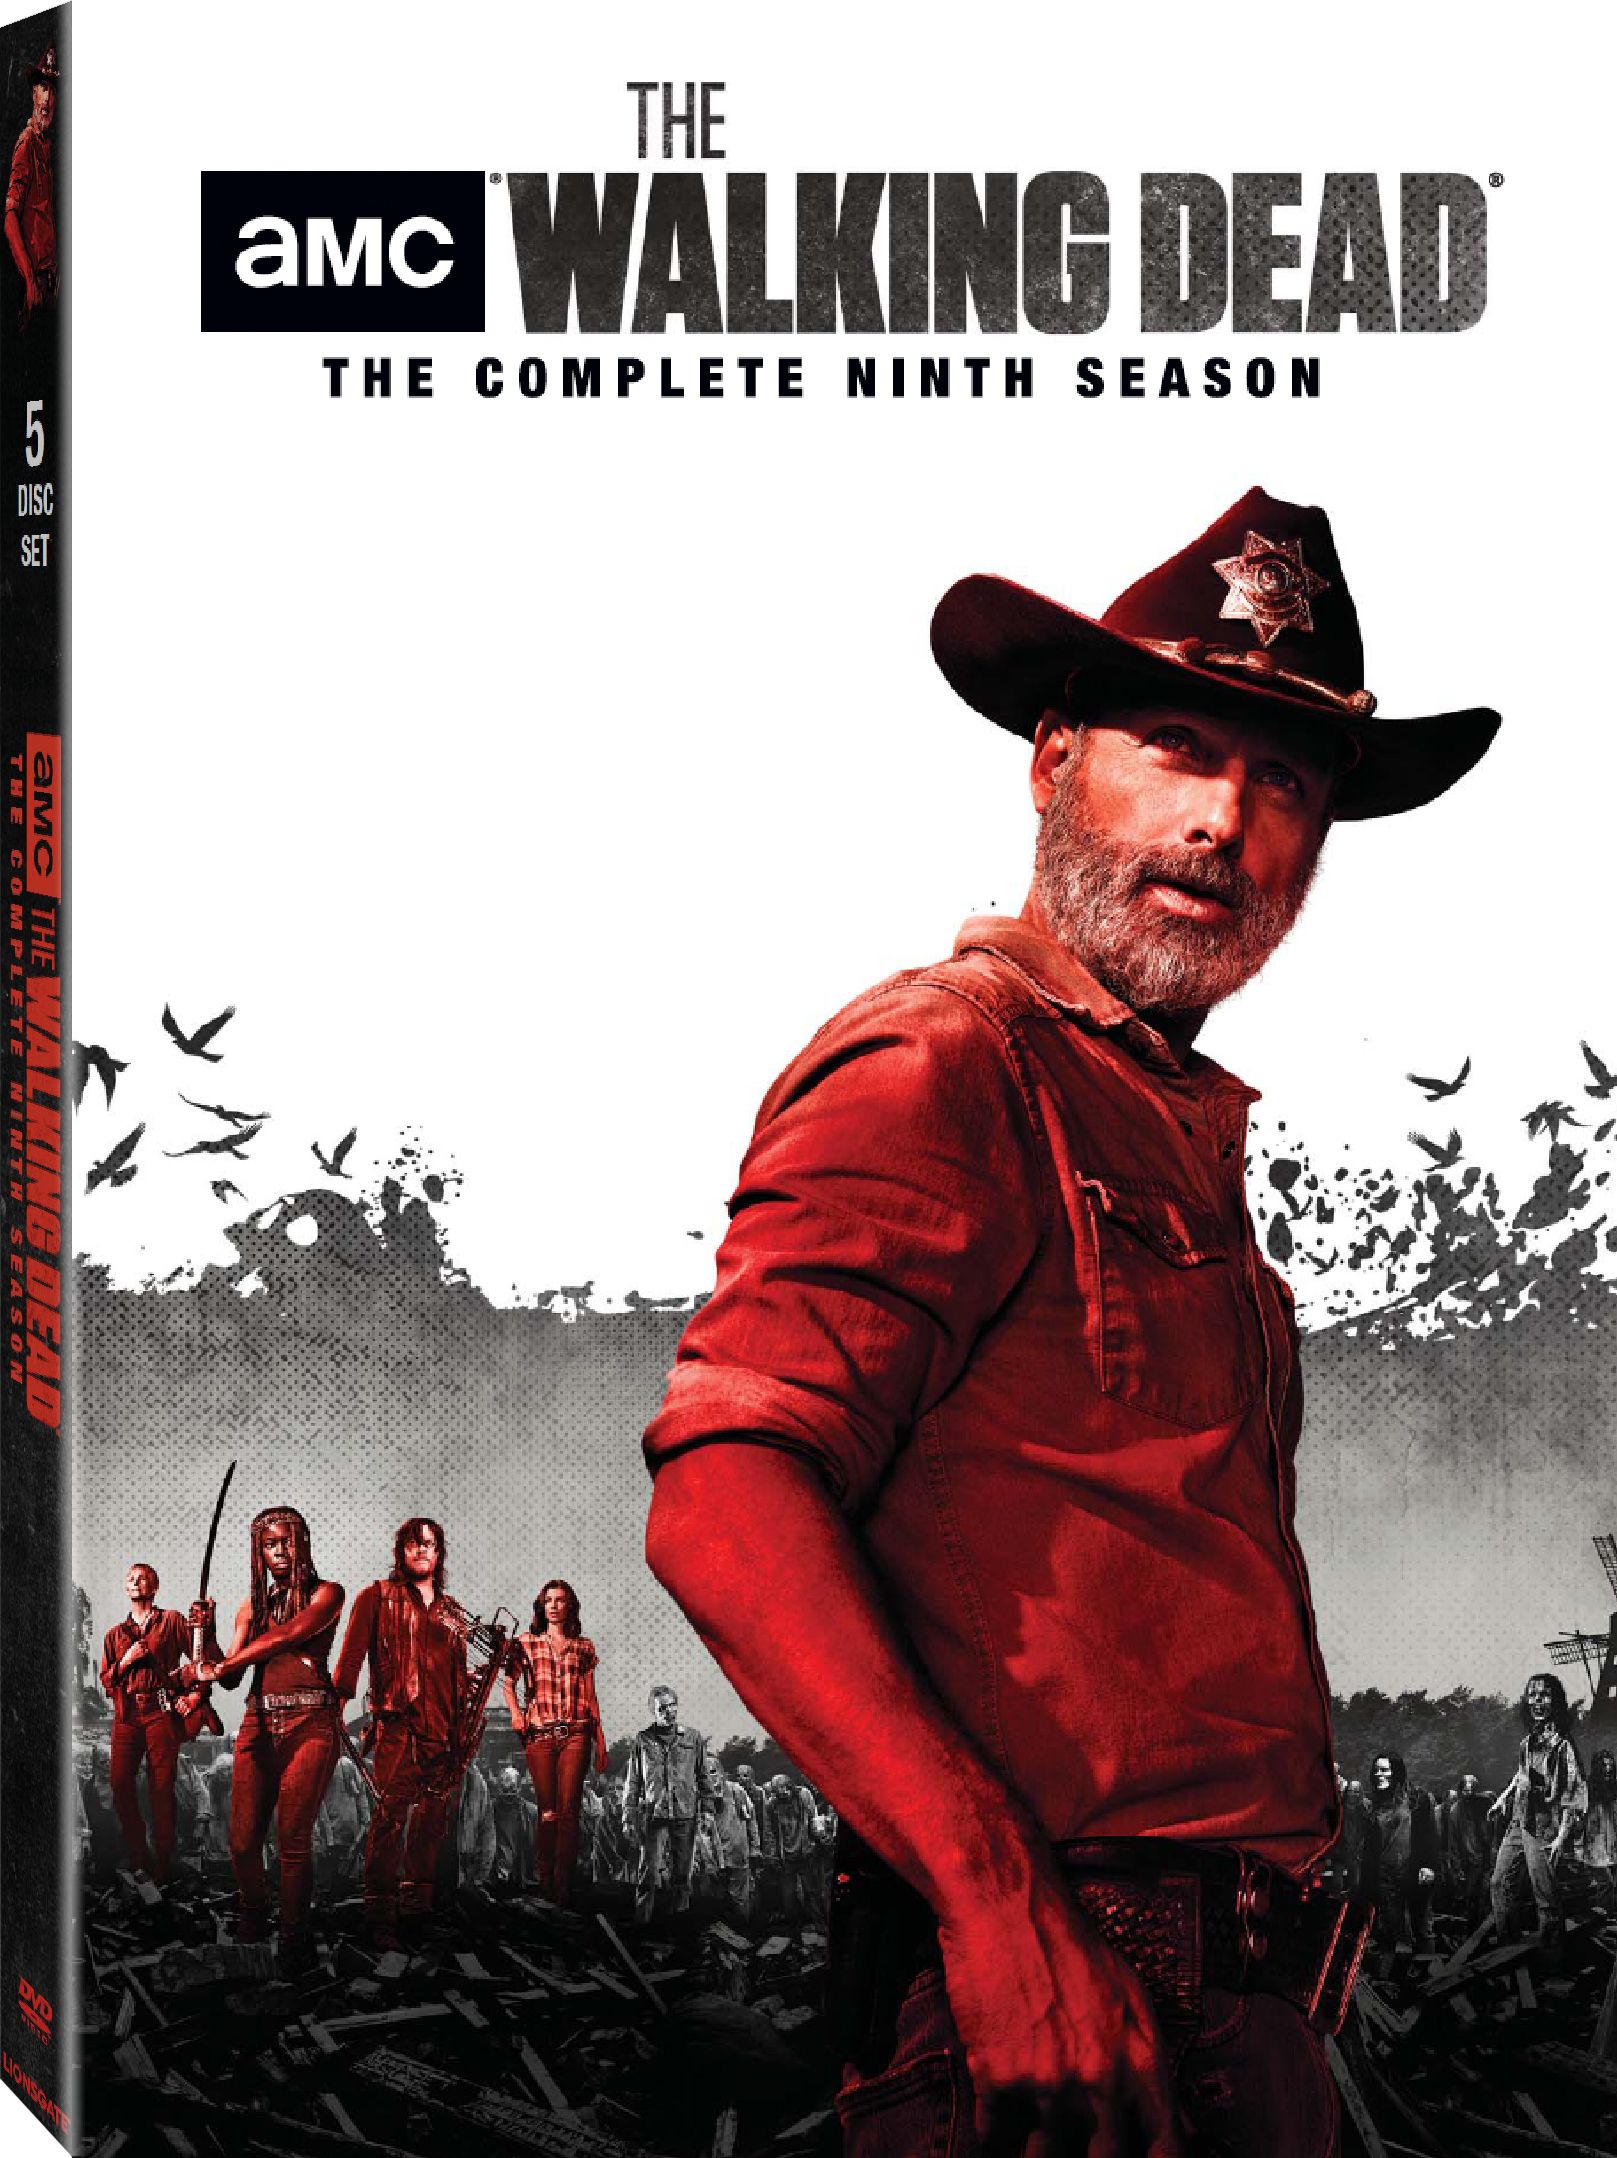 The Walking Dead season 9 DVD